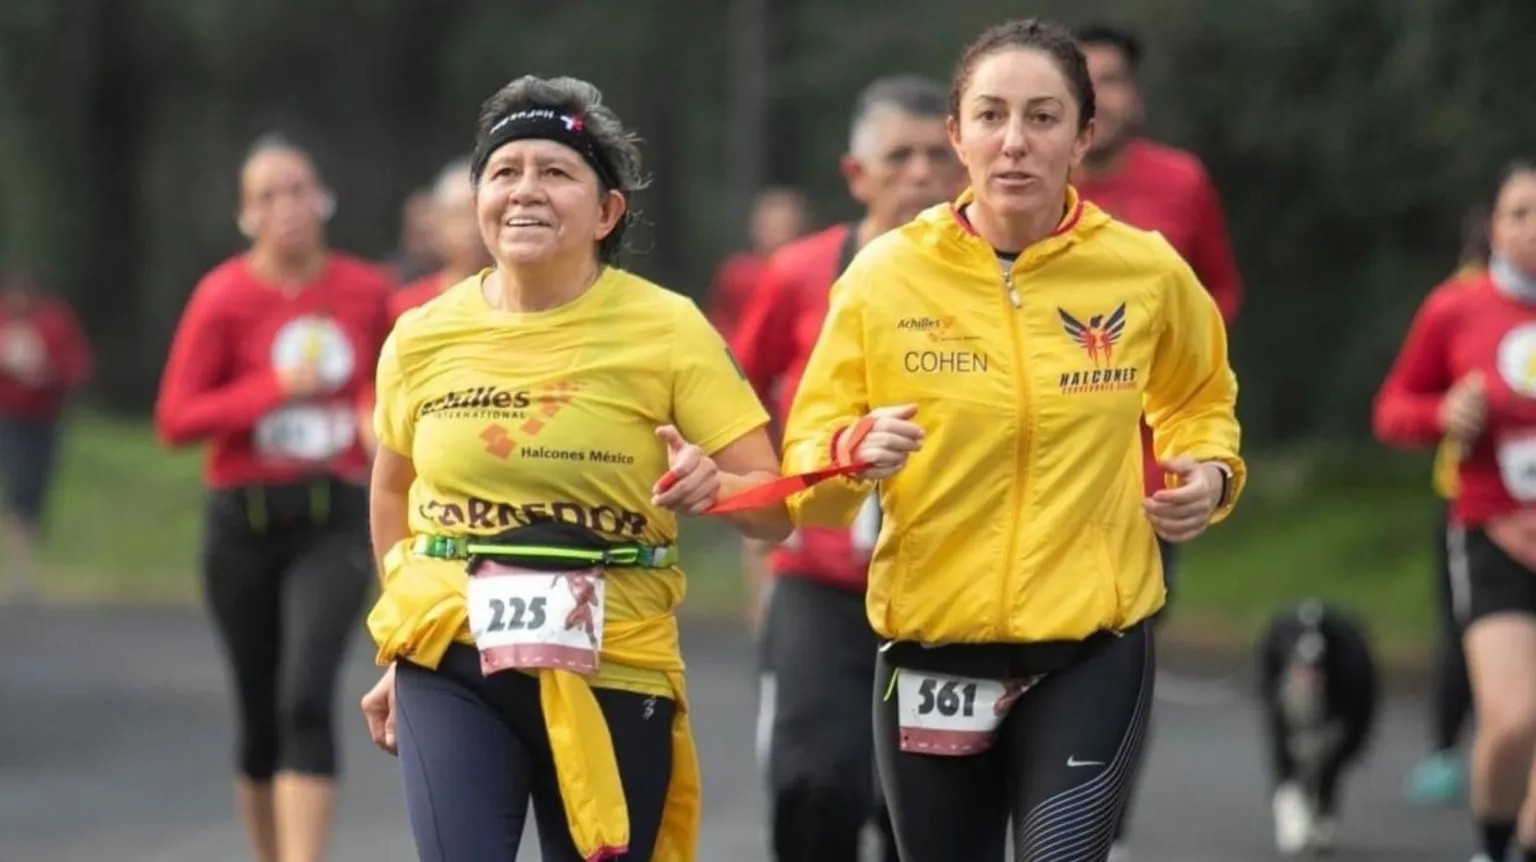 Martha López Vertiz, la primera corredora ciega que llega al Maratón de Nueva York desde México